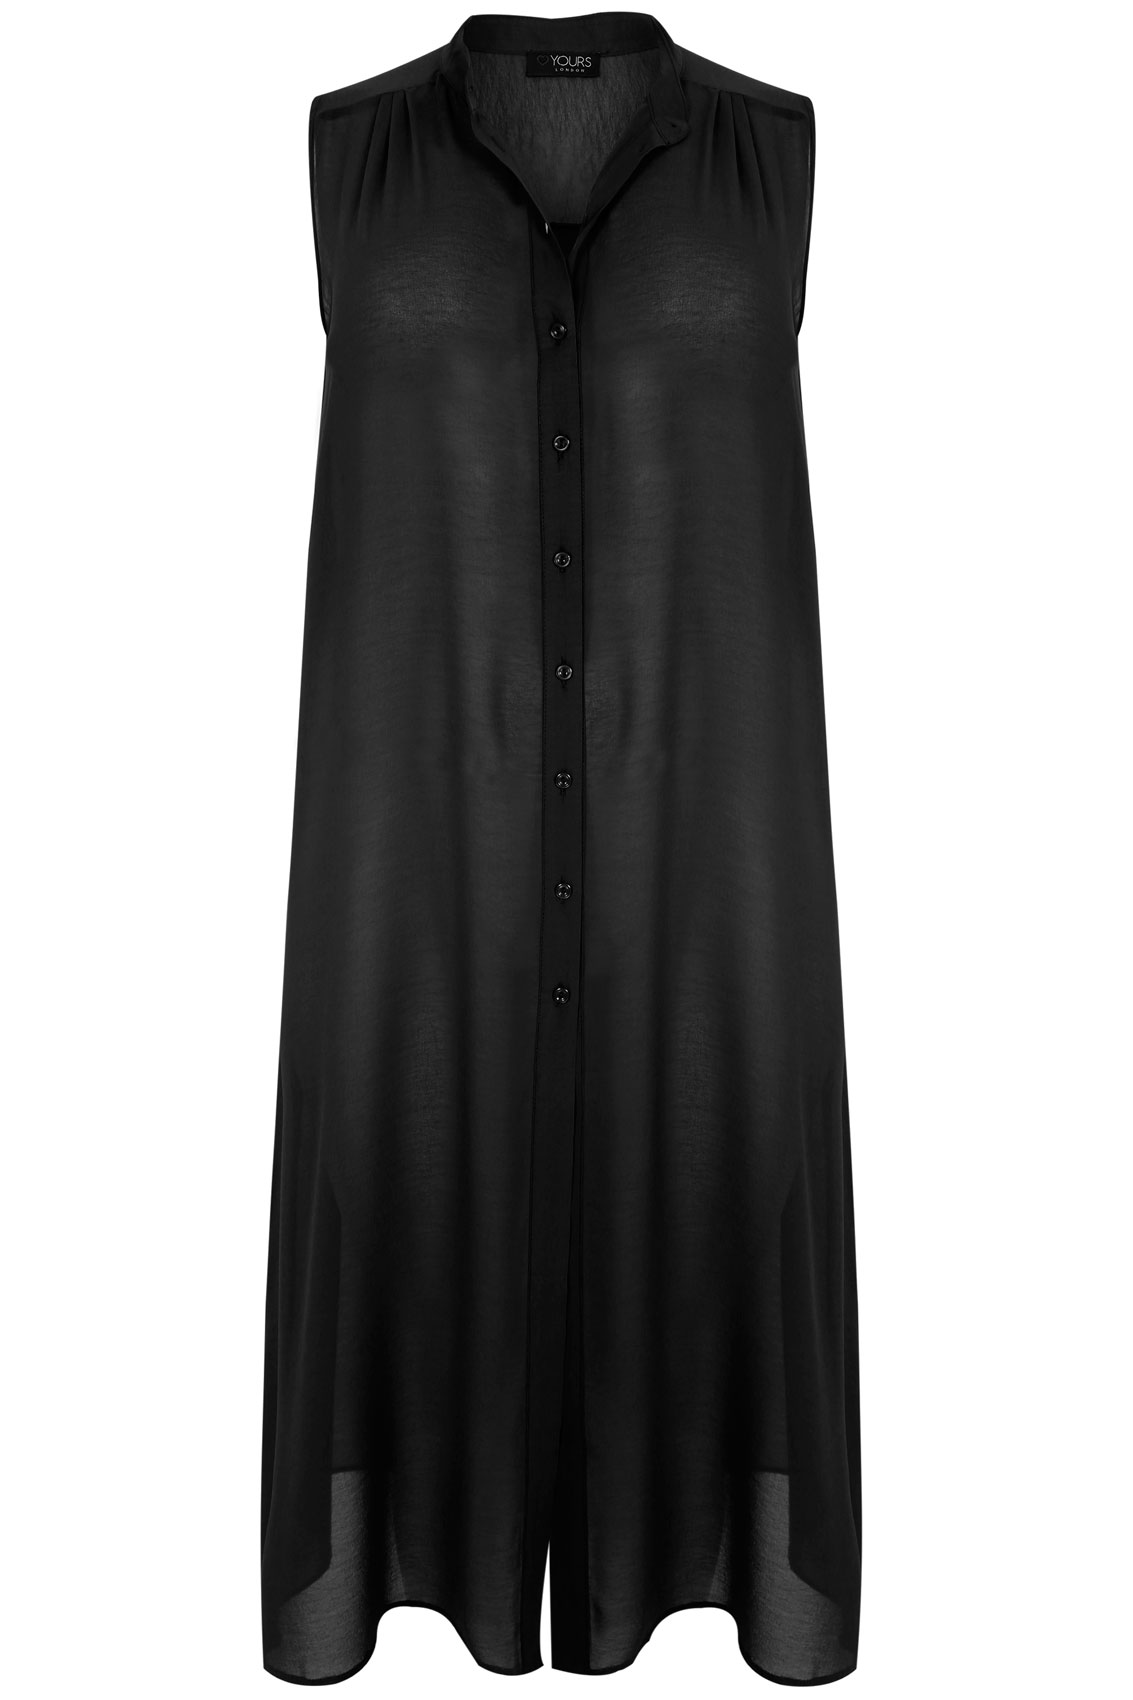 Black Maxi Length Button Down Sleeveless Shirt Plus Size 14 to 32